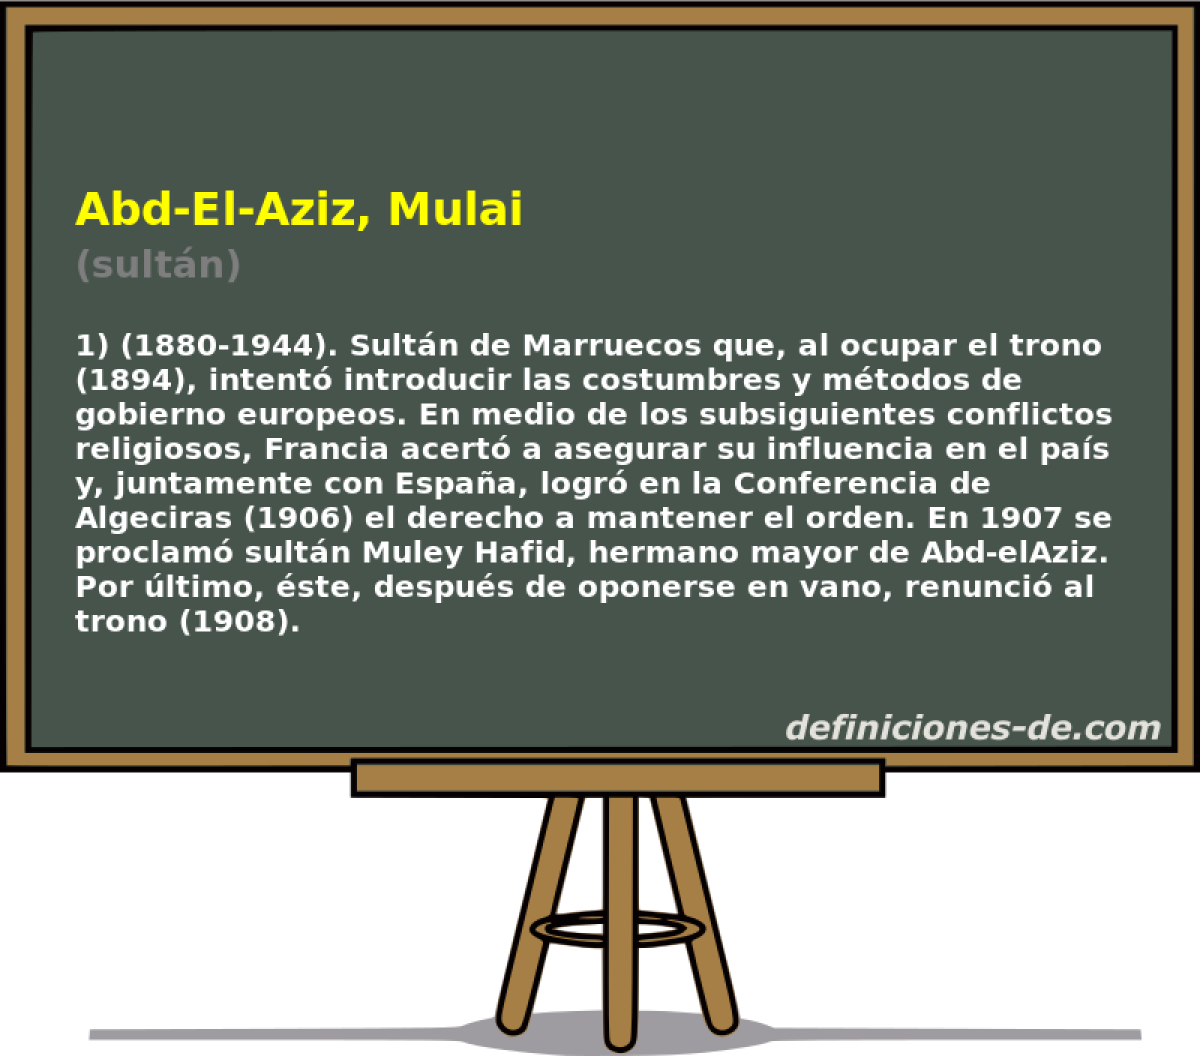 Abd-El-Aziz, Mulai (sultn)